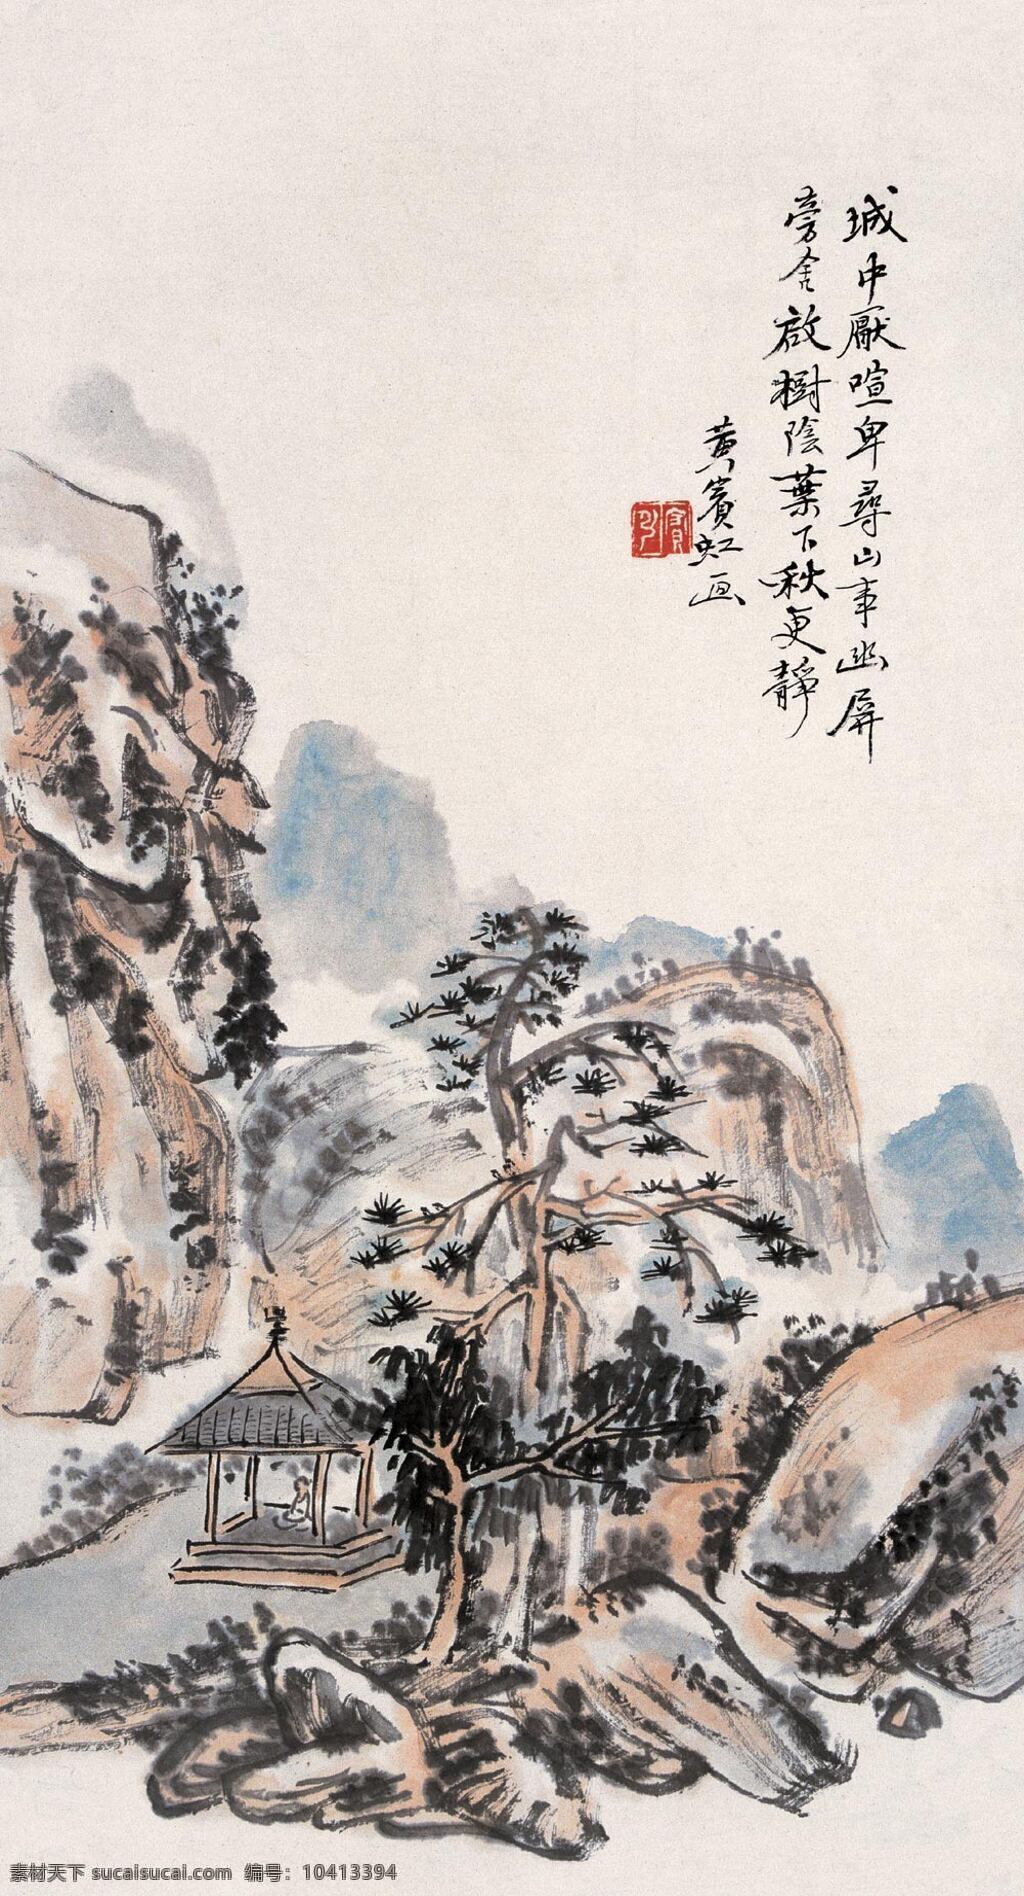 黄宾虹 写意山水 积墨法 传统 山水画 近代绘画 文化艺术 绘画书法